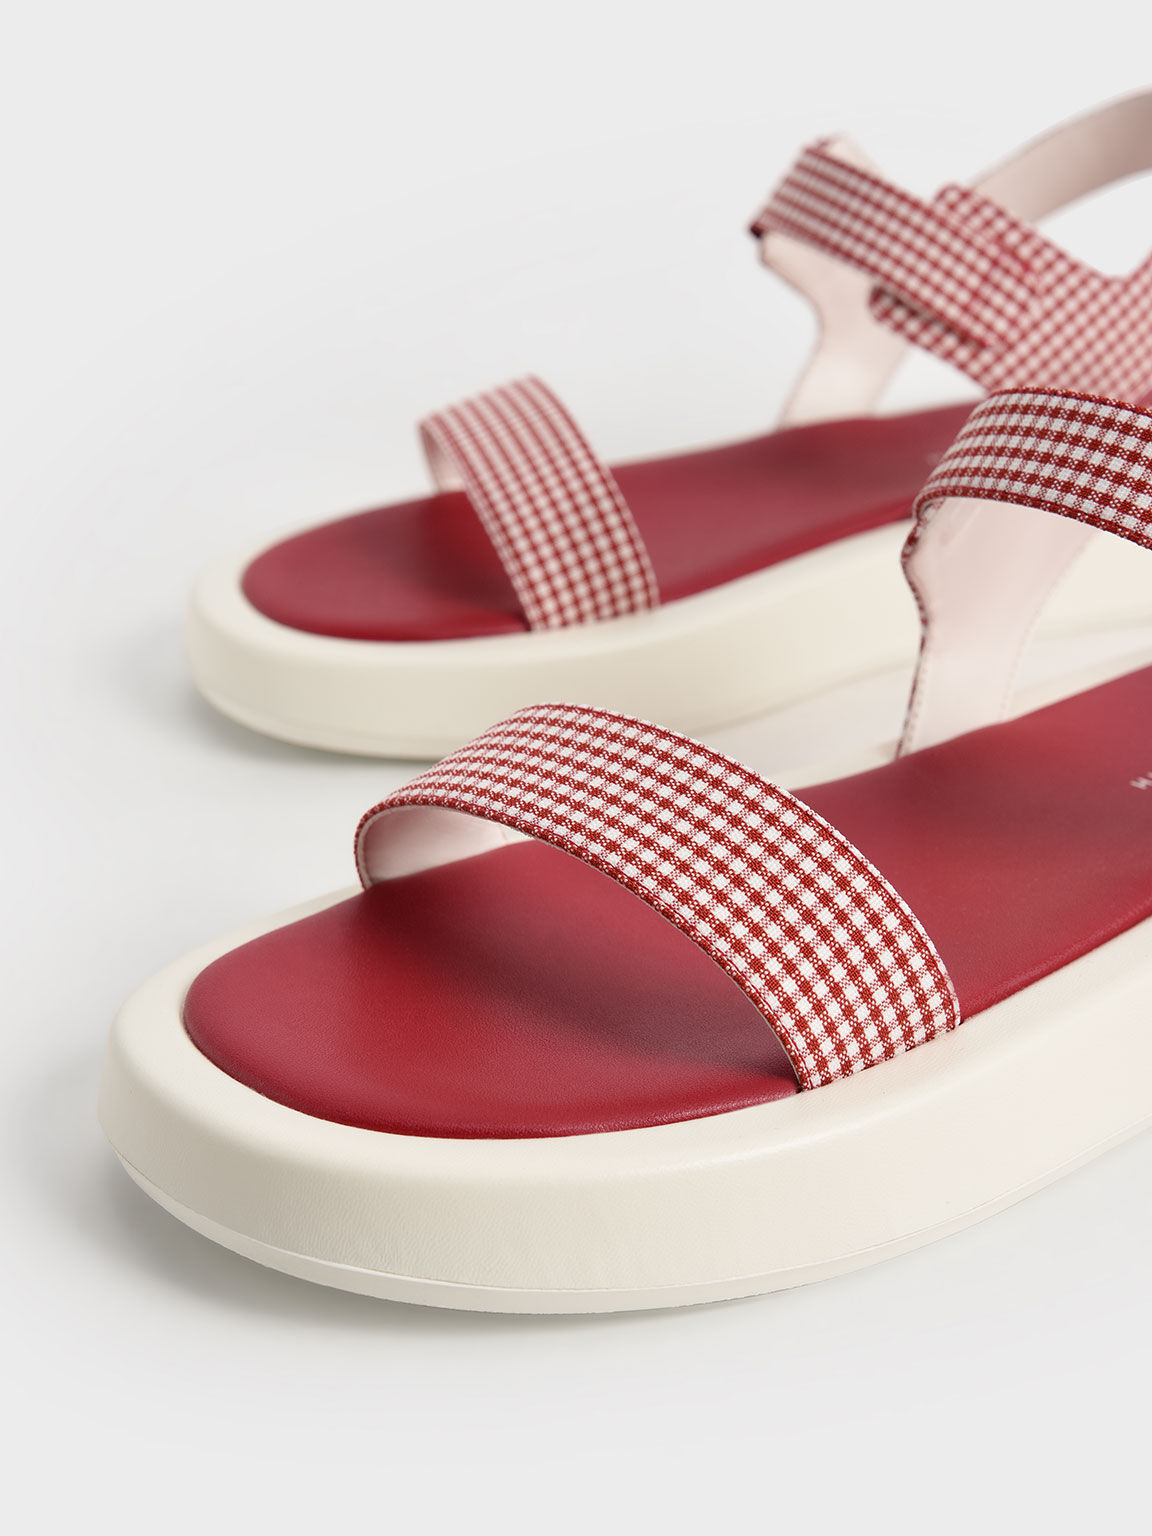 Check-Print Buckled Ankle Strap Flatform Sandals, Red, hi-res